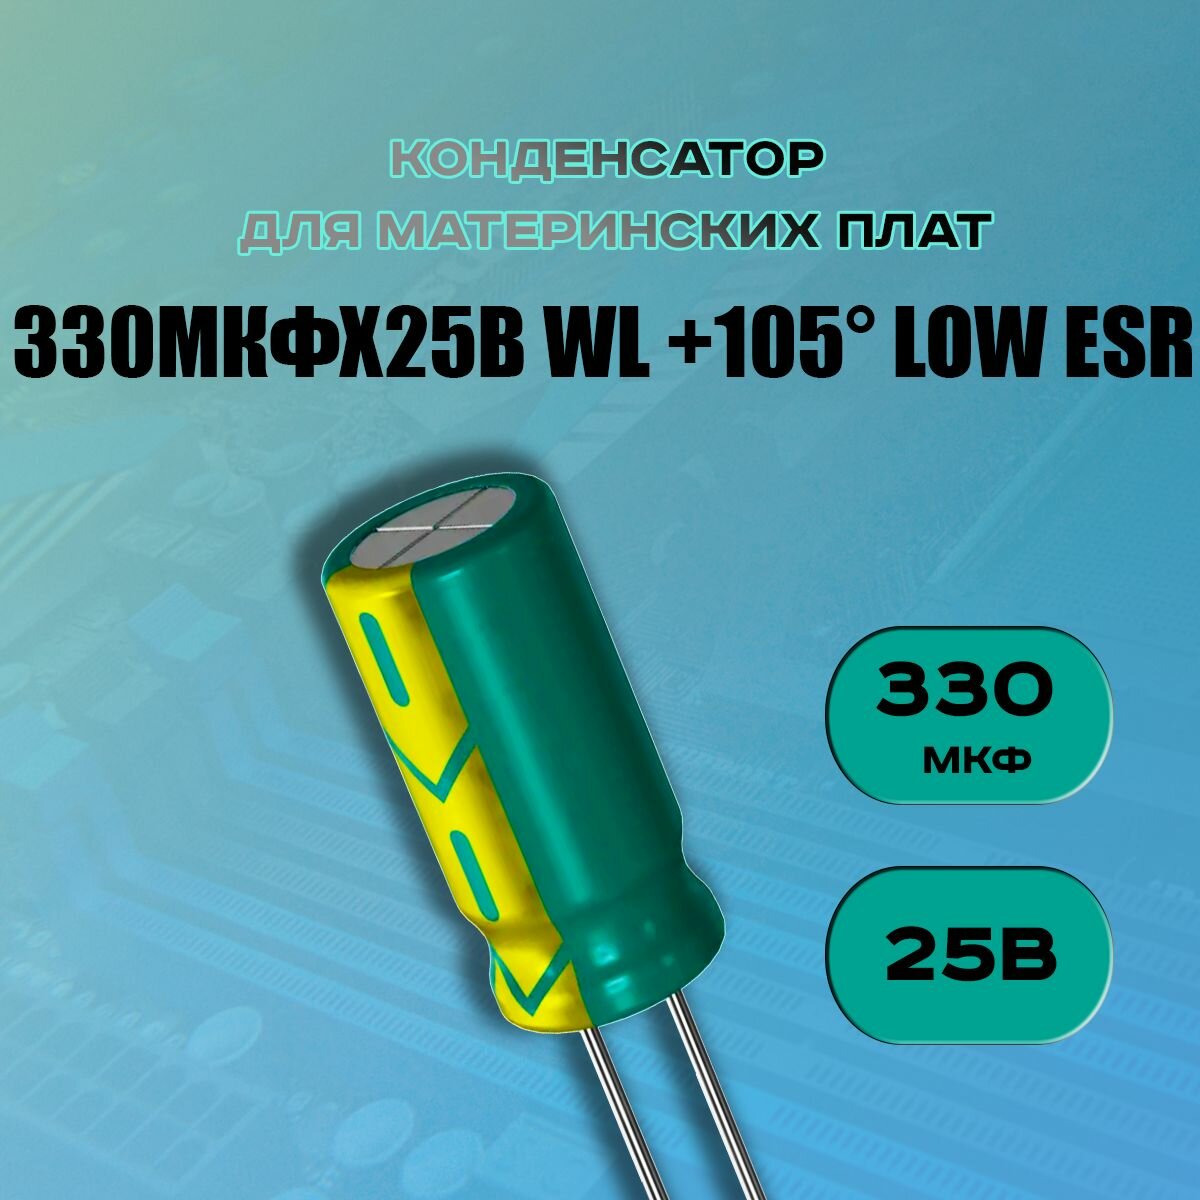 Конденсатор для материнской платы 330 микрофарат 25 Вольт (330uf 25V WL +105 LOW ESR) - 1 шт.